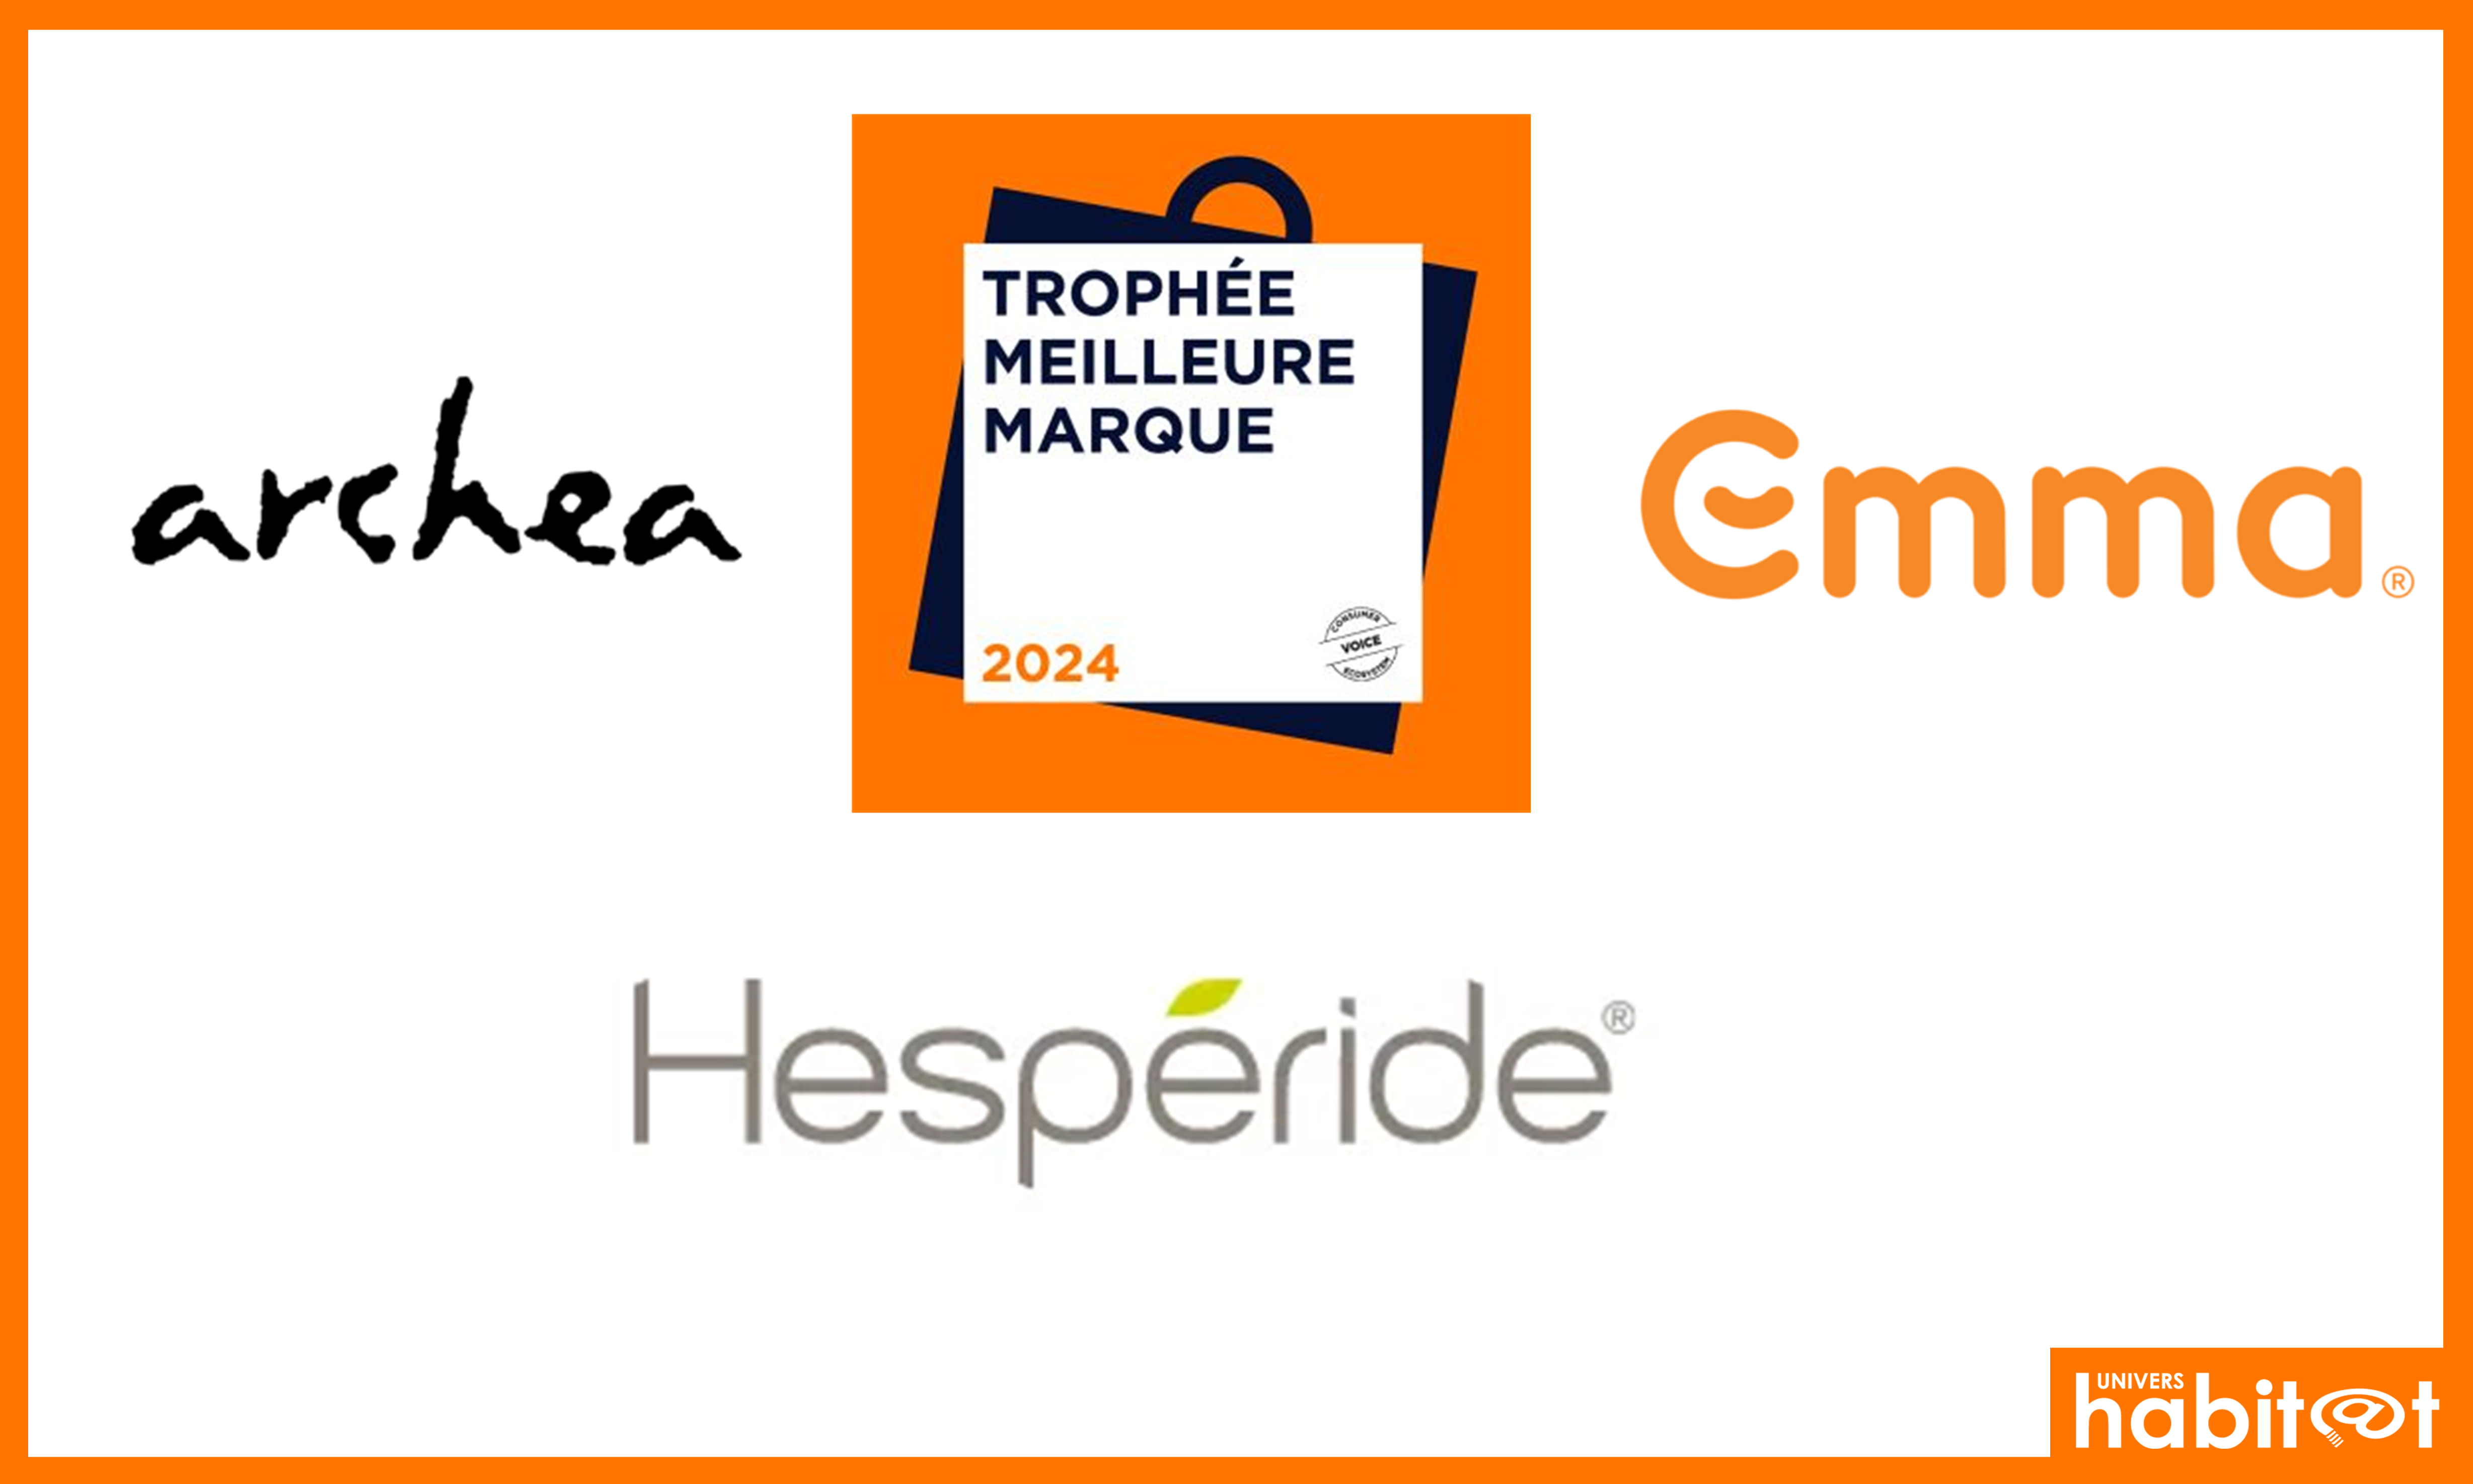 Hespéride, Emma et Archea reçoivent le logo « Trophée Meilleure Marque 2024 »